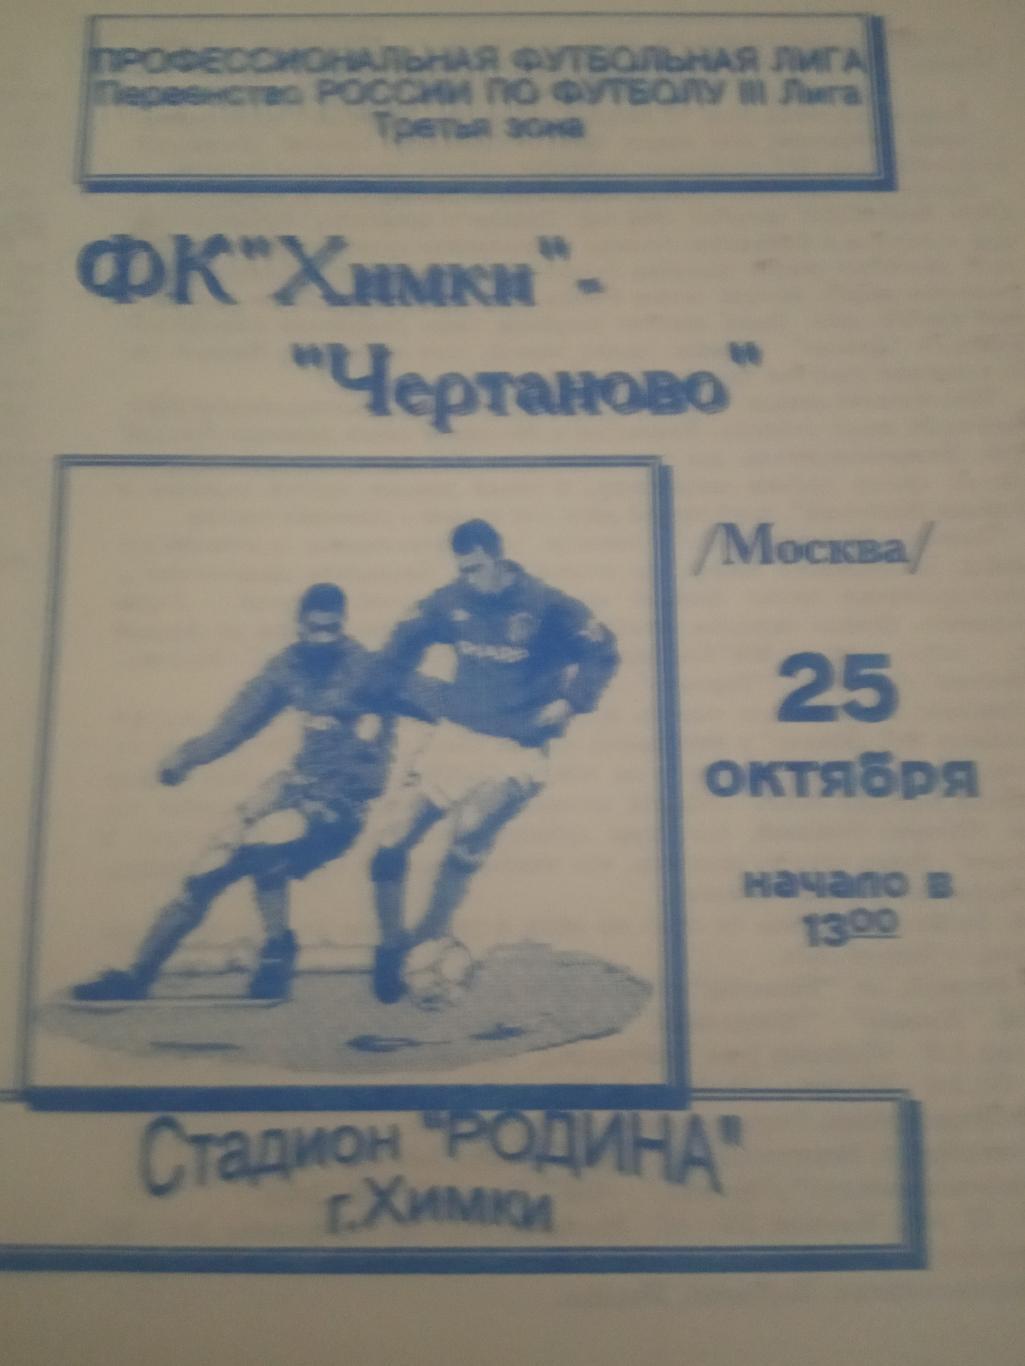 ФК Химки - Чертаново Москва 25 октября 1997